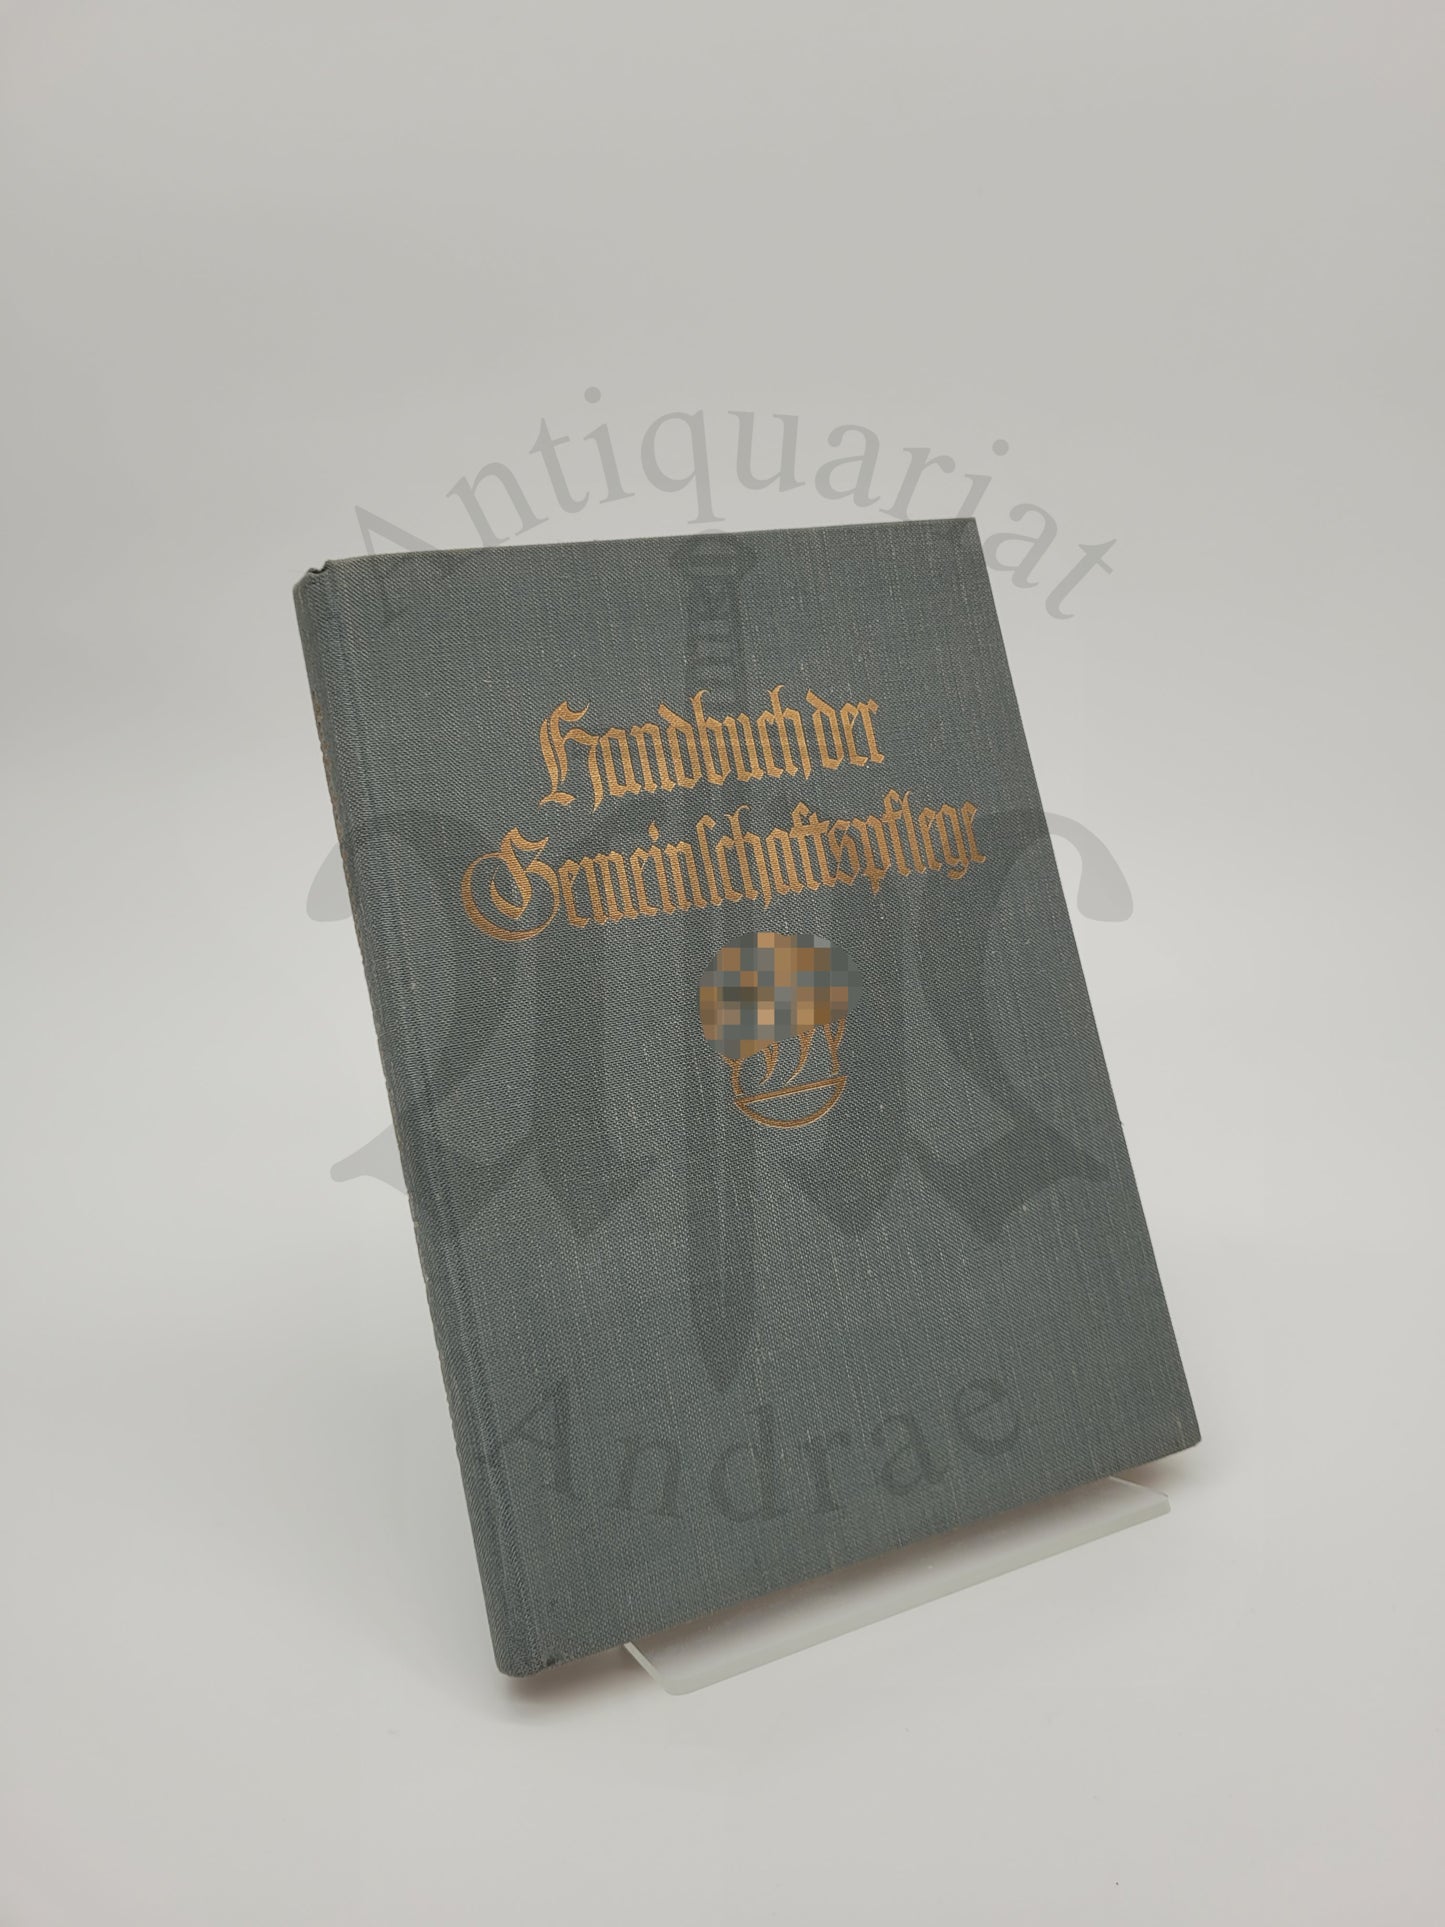 Handbuch der Gemeinschaftspflege (Original Schutzumschlag)